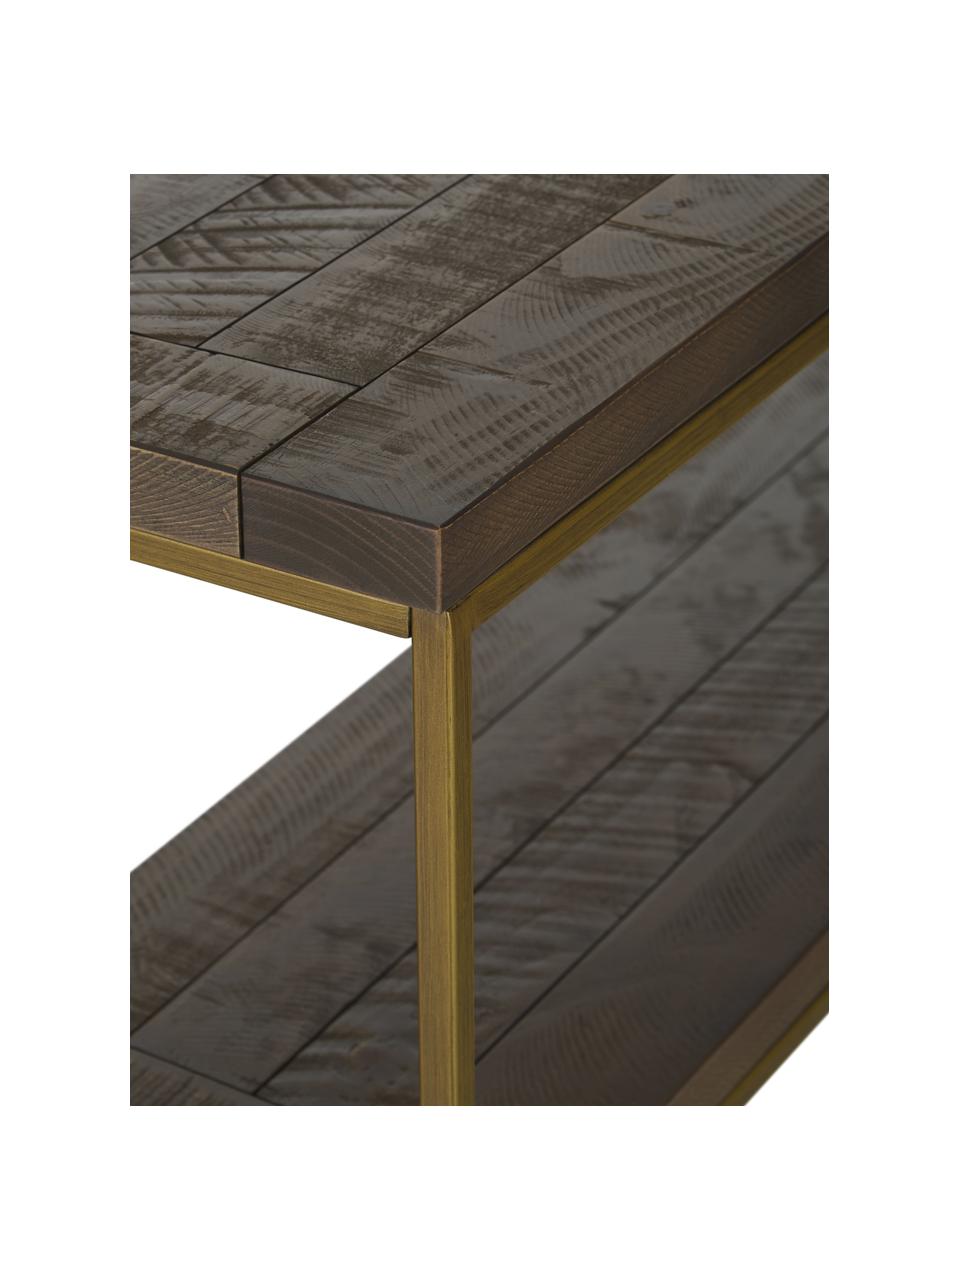 Konzolový stolek v industriálním stylu Dalton, Police: šedavě hnědá s viditelnou dřevěnou strukturou Rám: zlatá